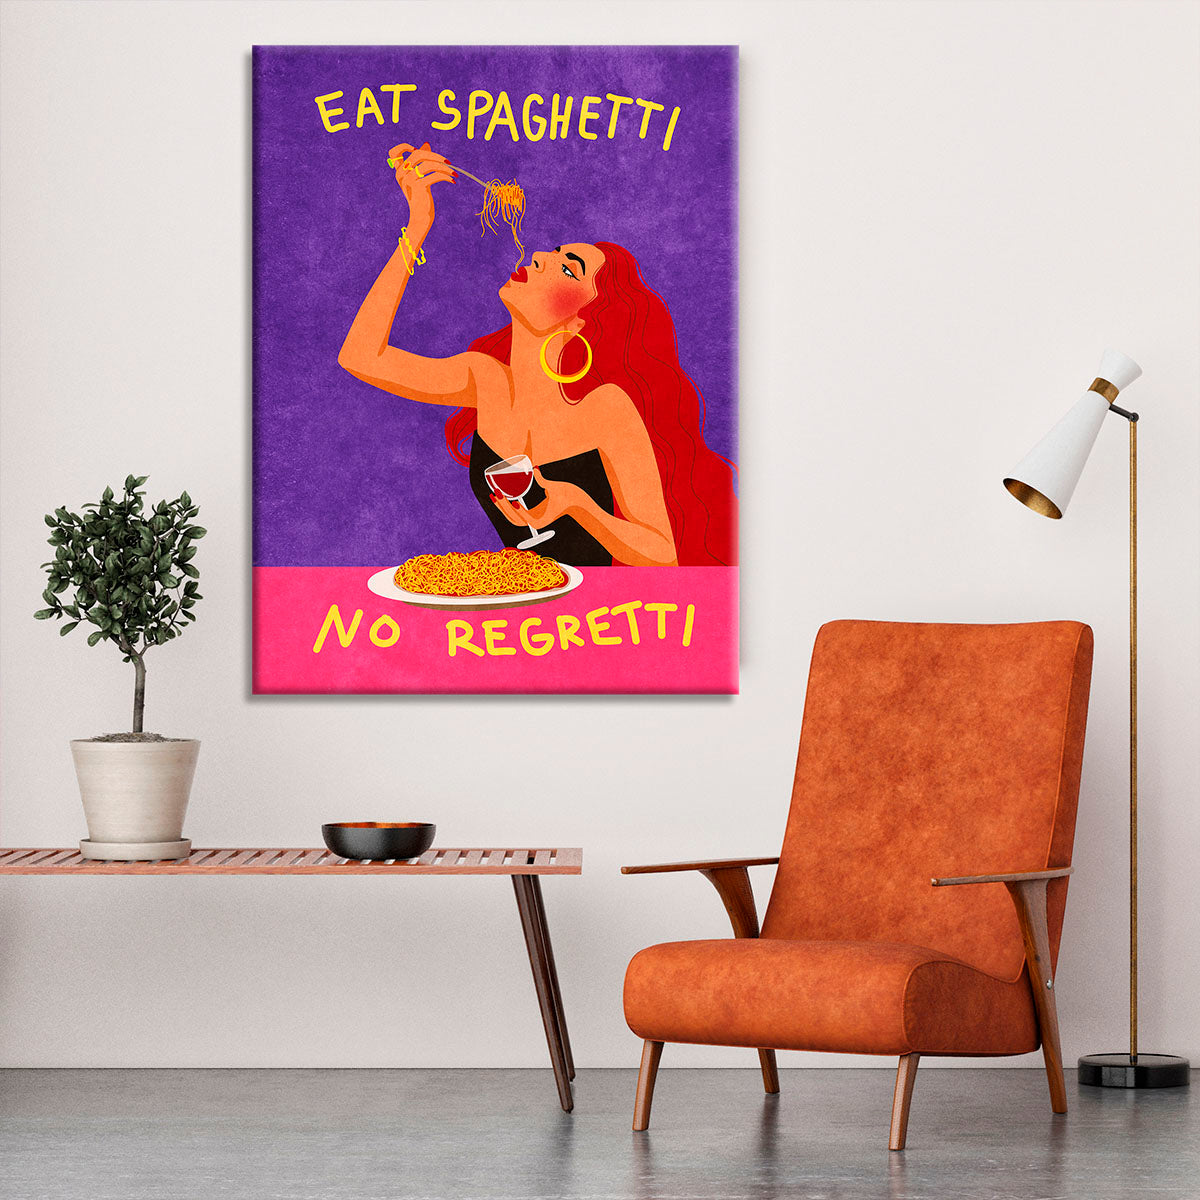 Eat spaghetti no regretti Canvas Print or Poster - Canvas Art Rocks - 6